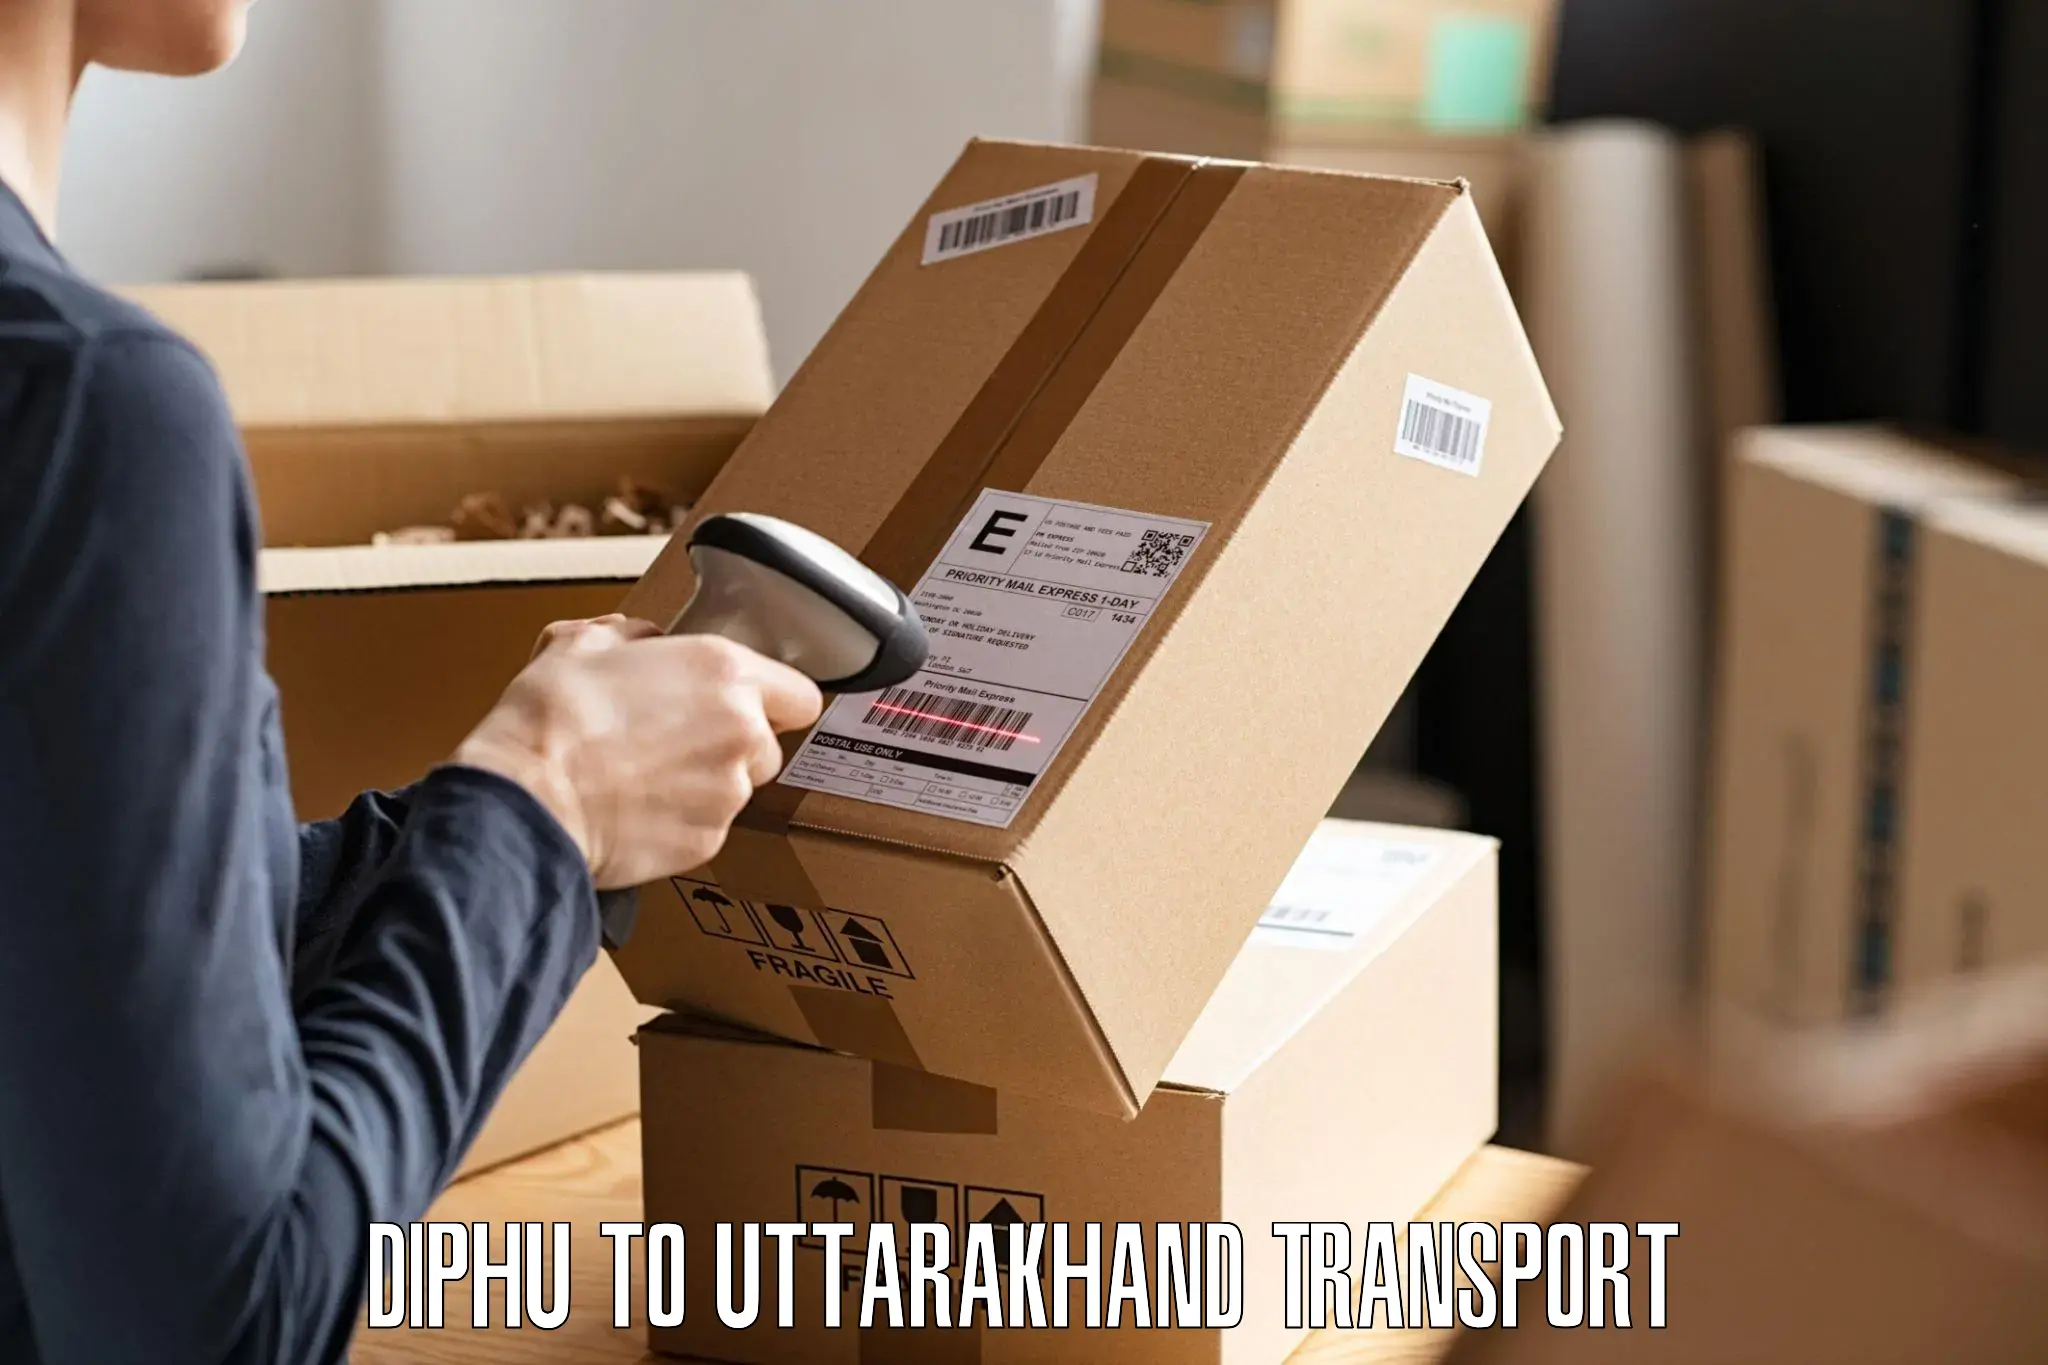 Parcel transport services Diphu to Uttarkashi